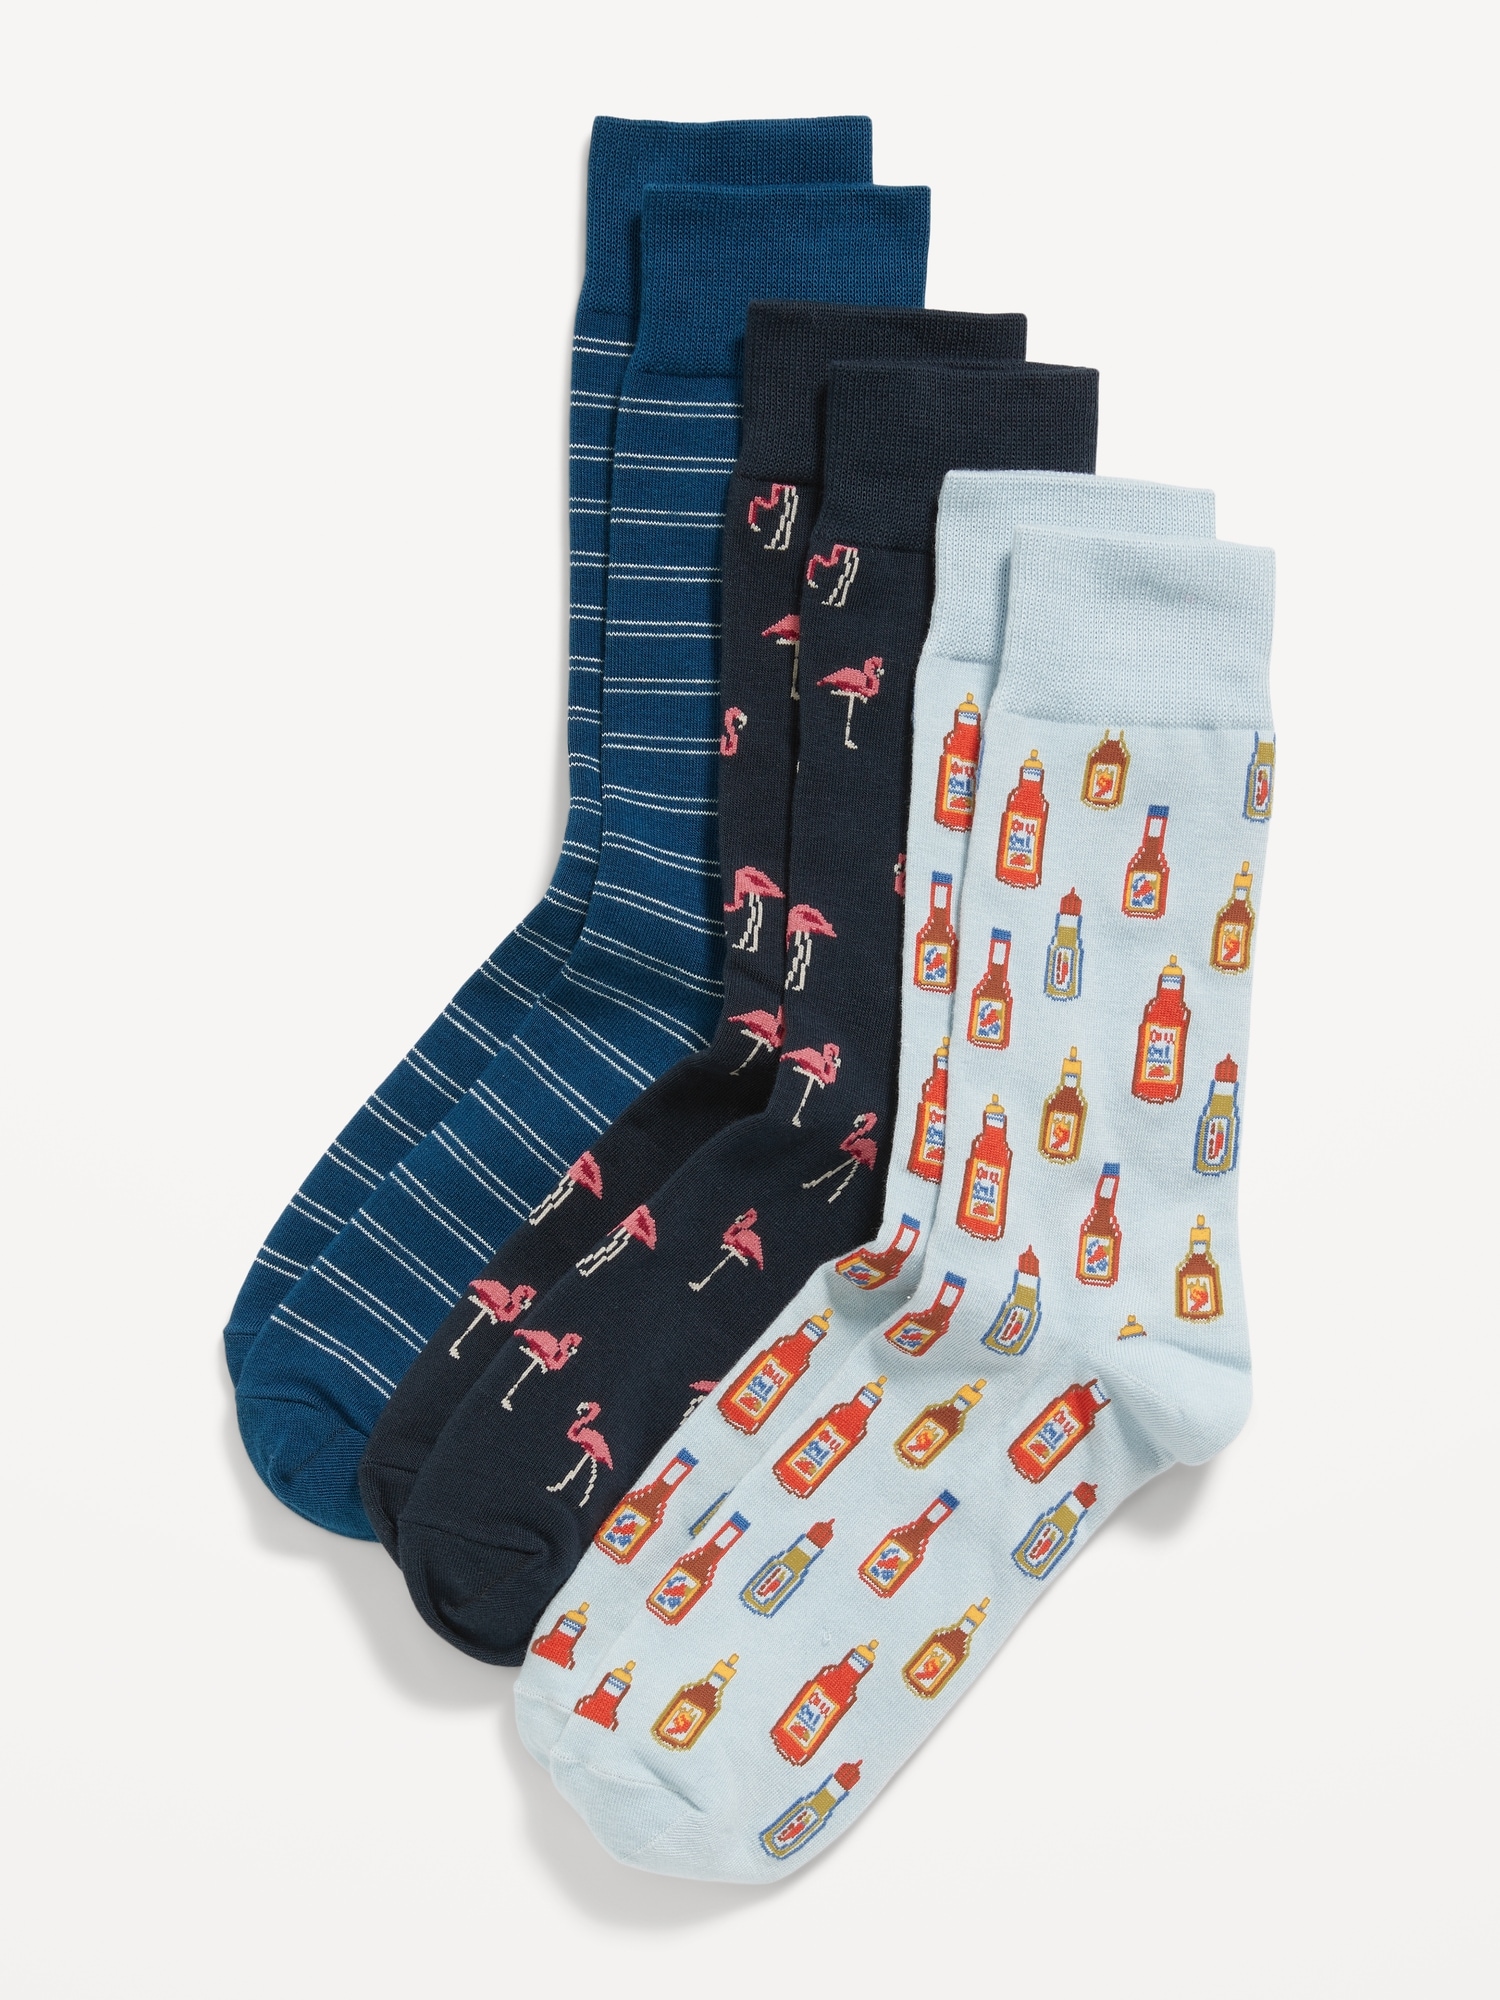 Uniq 3in1 Liner Socks